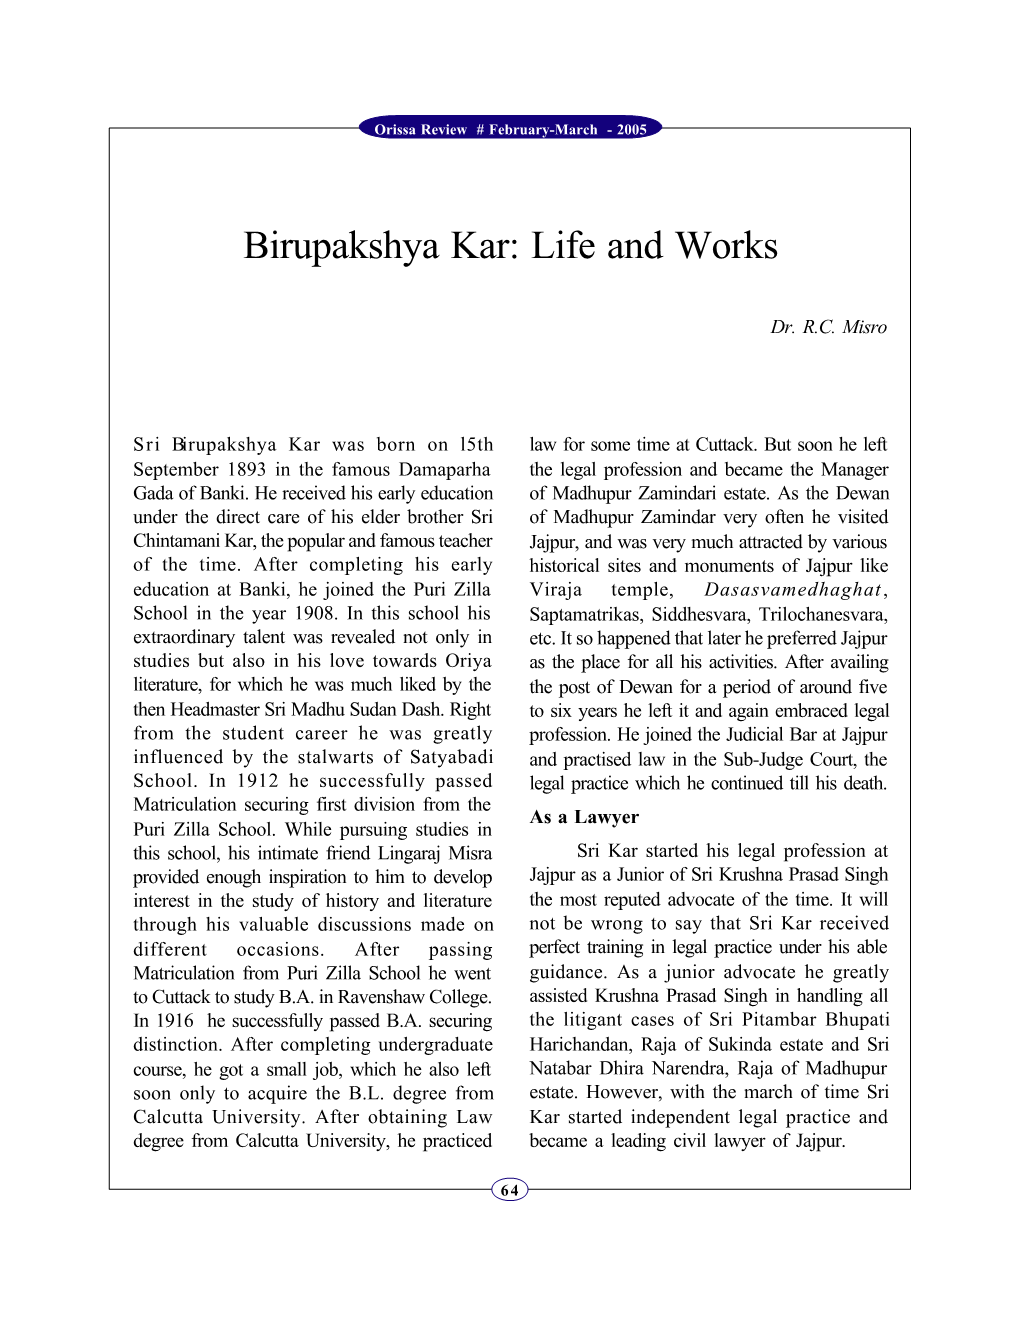 Birupakshya Kar: Life and Works